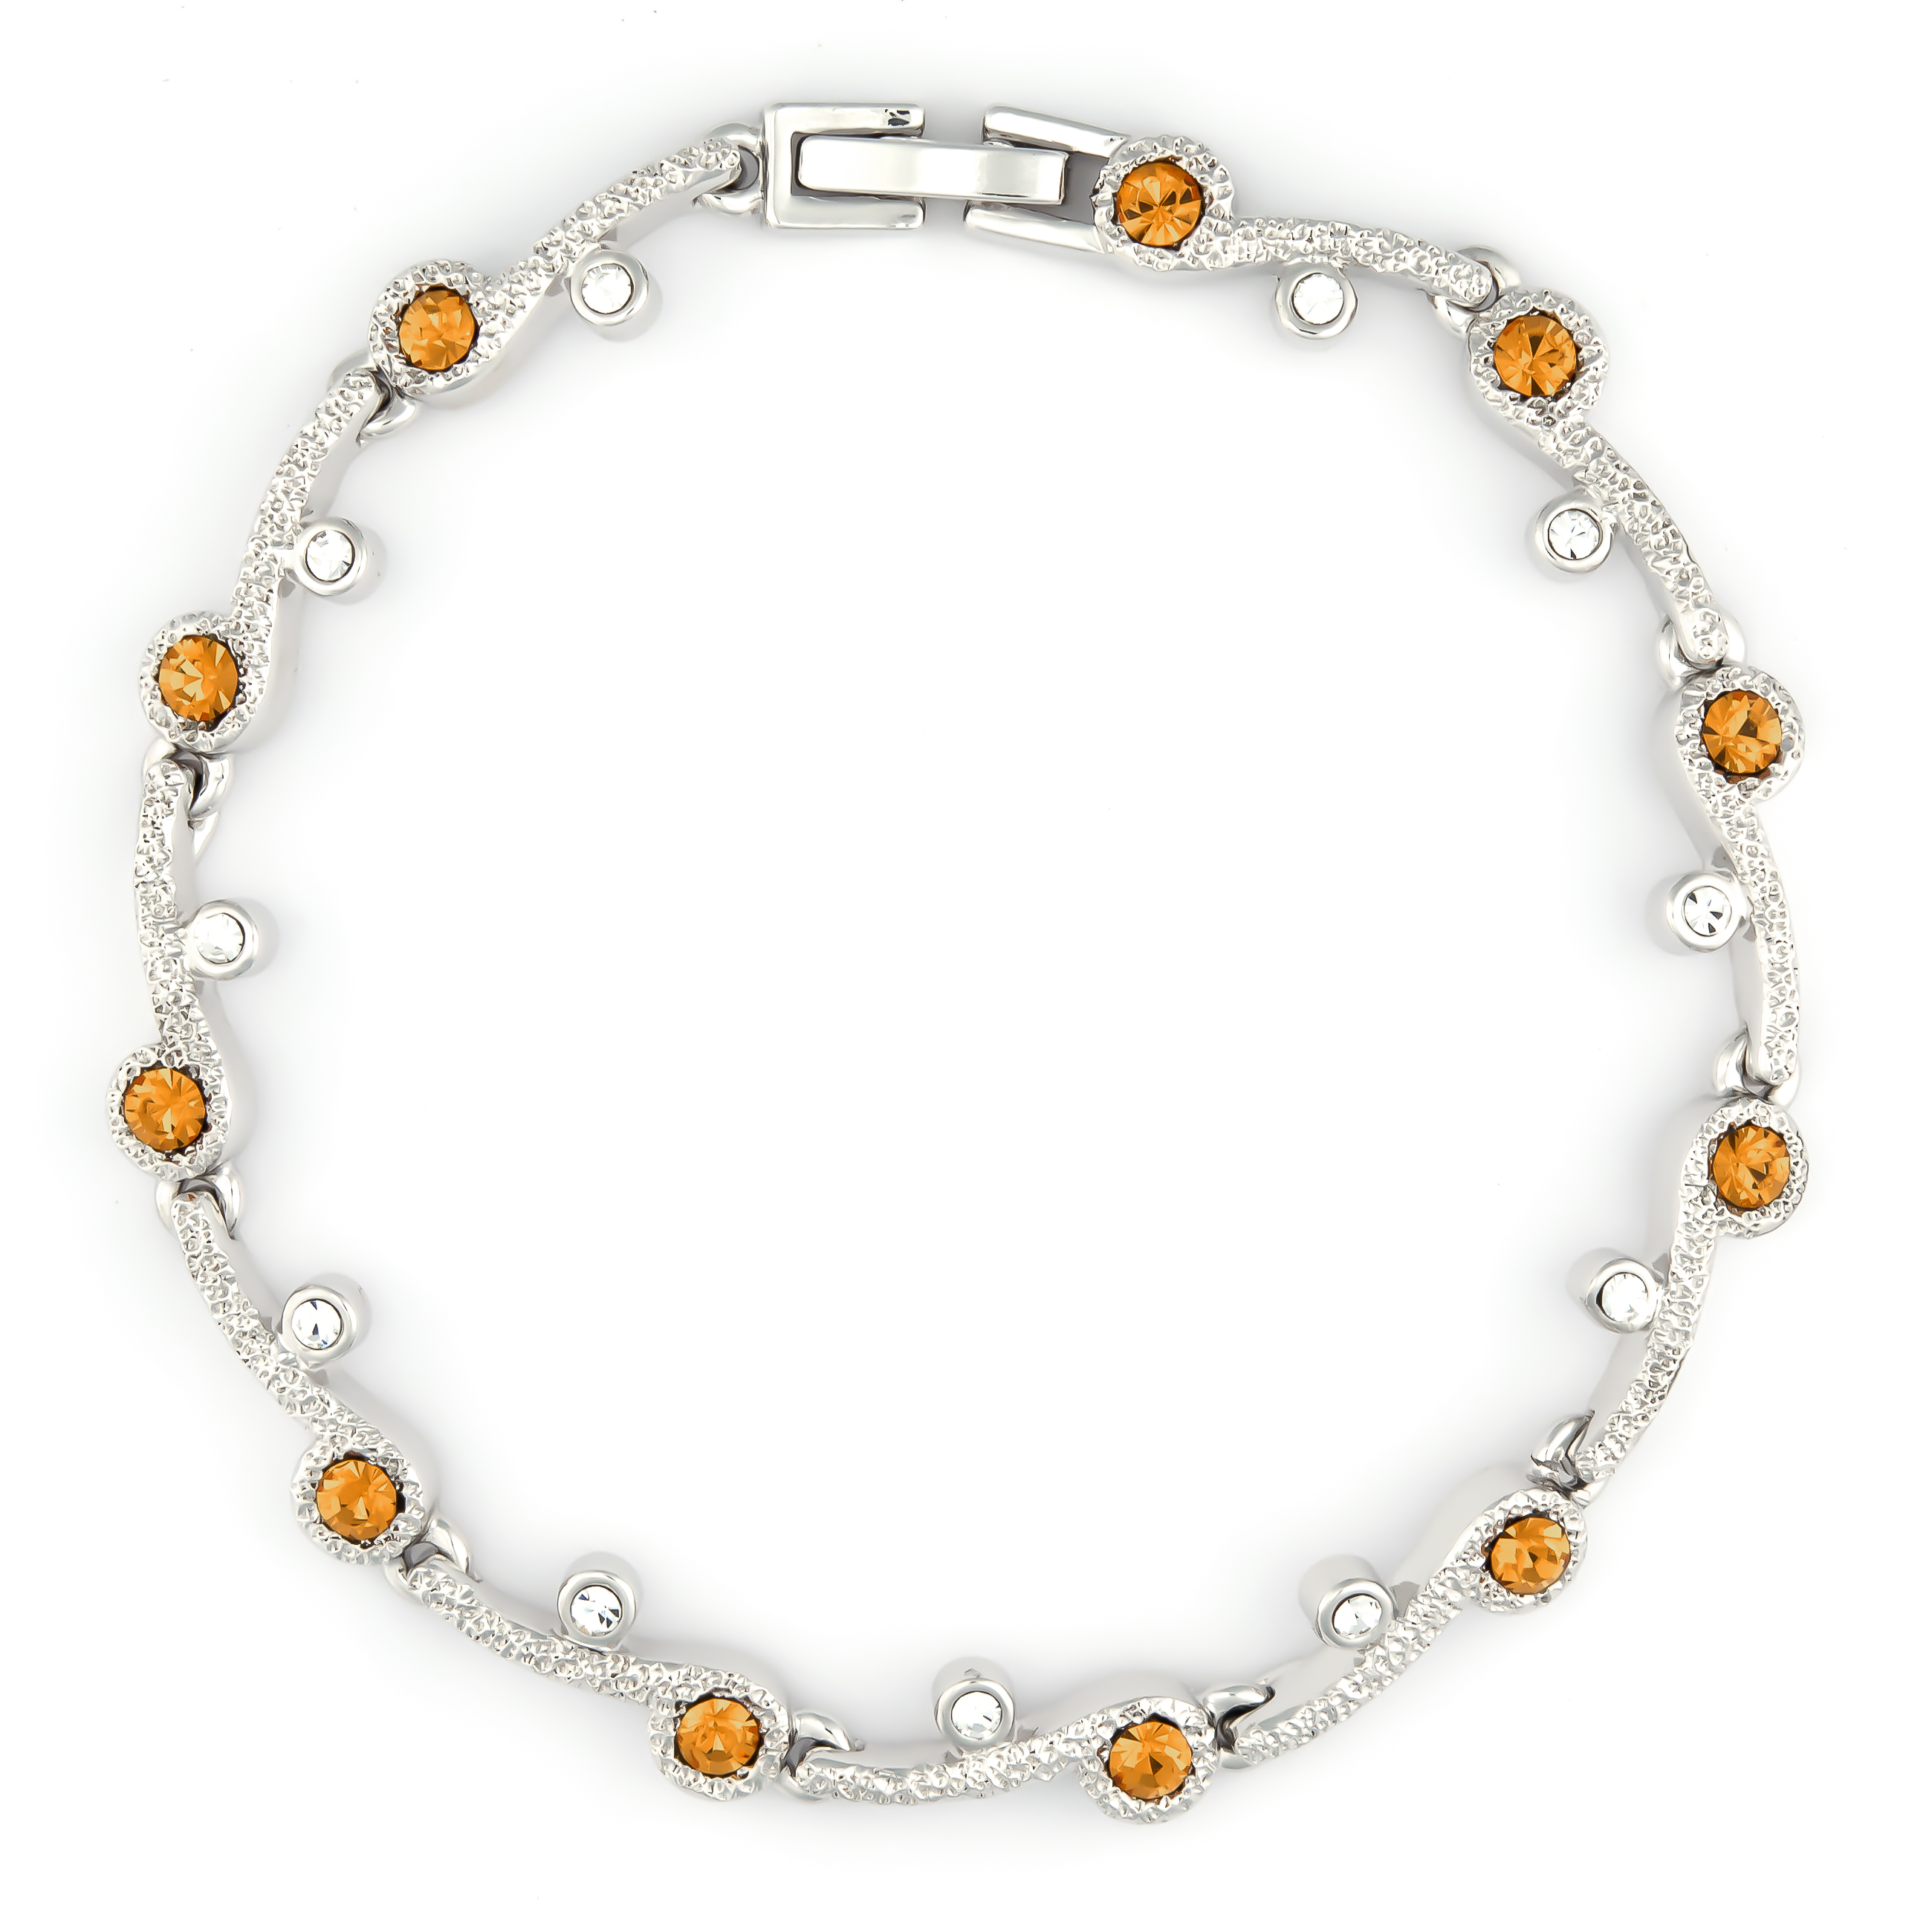 K.V. Fuchs Design Schmuck Damen Armband in silber mit Zirkonia in orange, weiß »22-02«